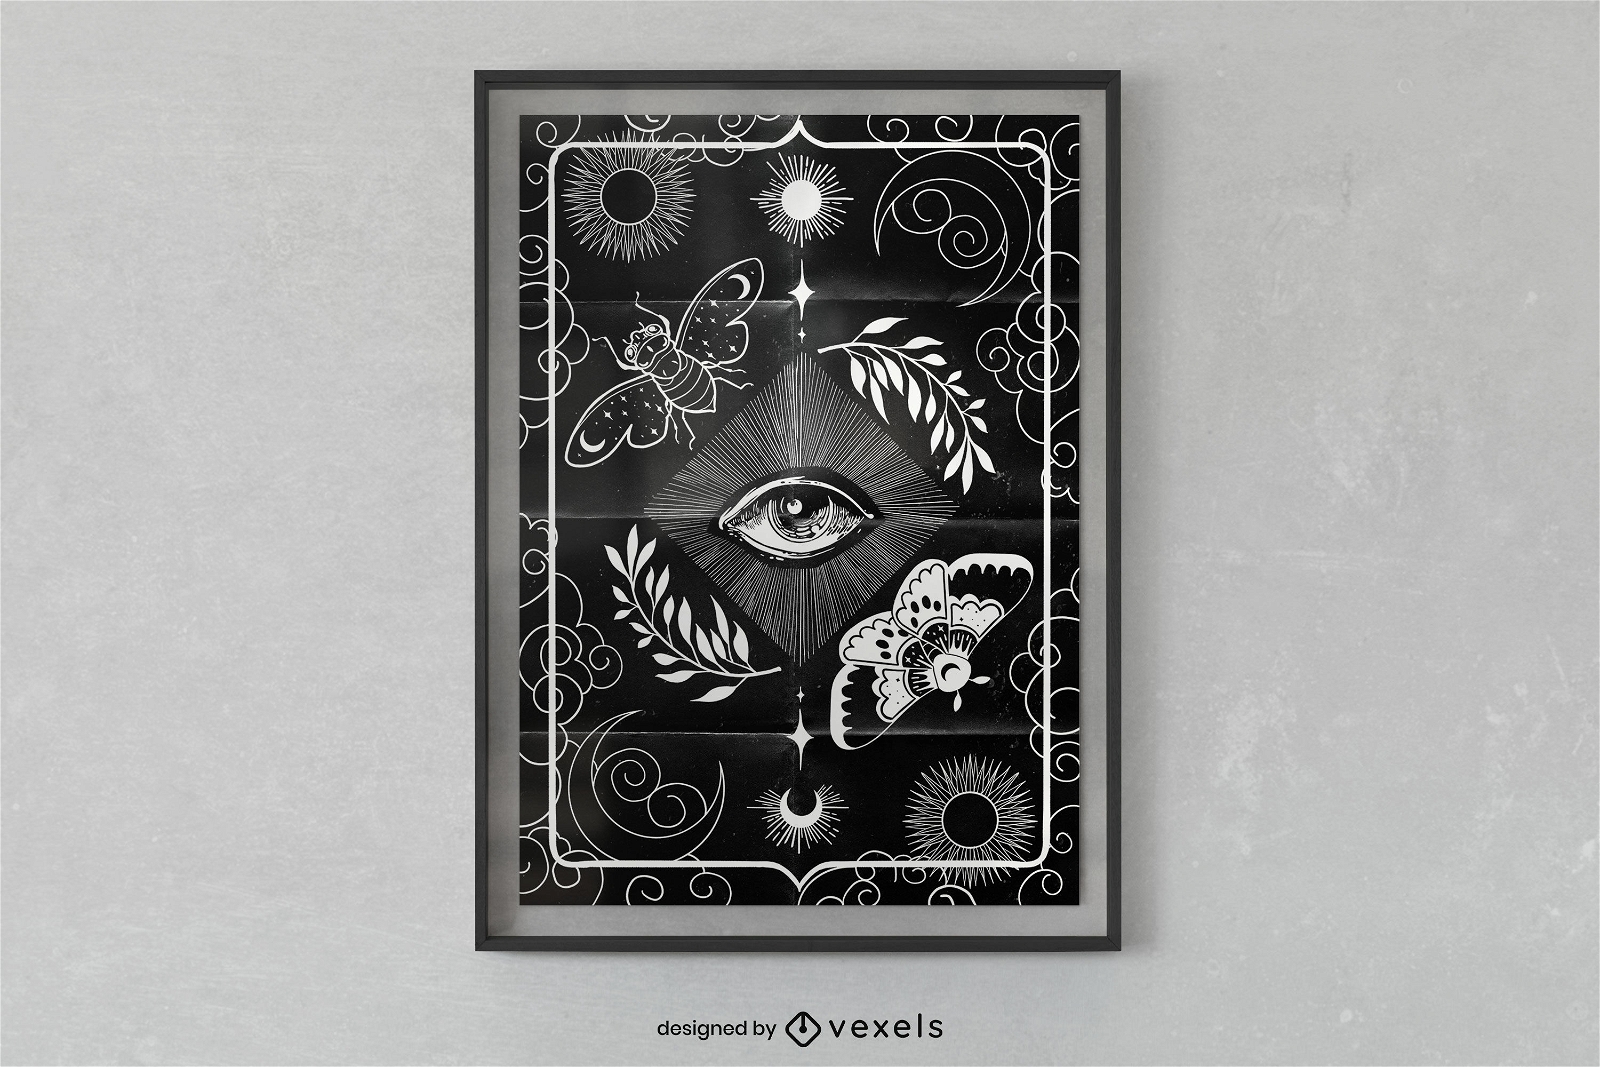 Hexenhaftes Plakatdesign für das dritte Auge